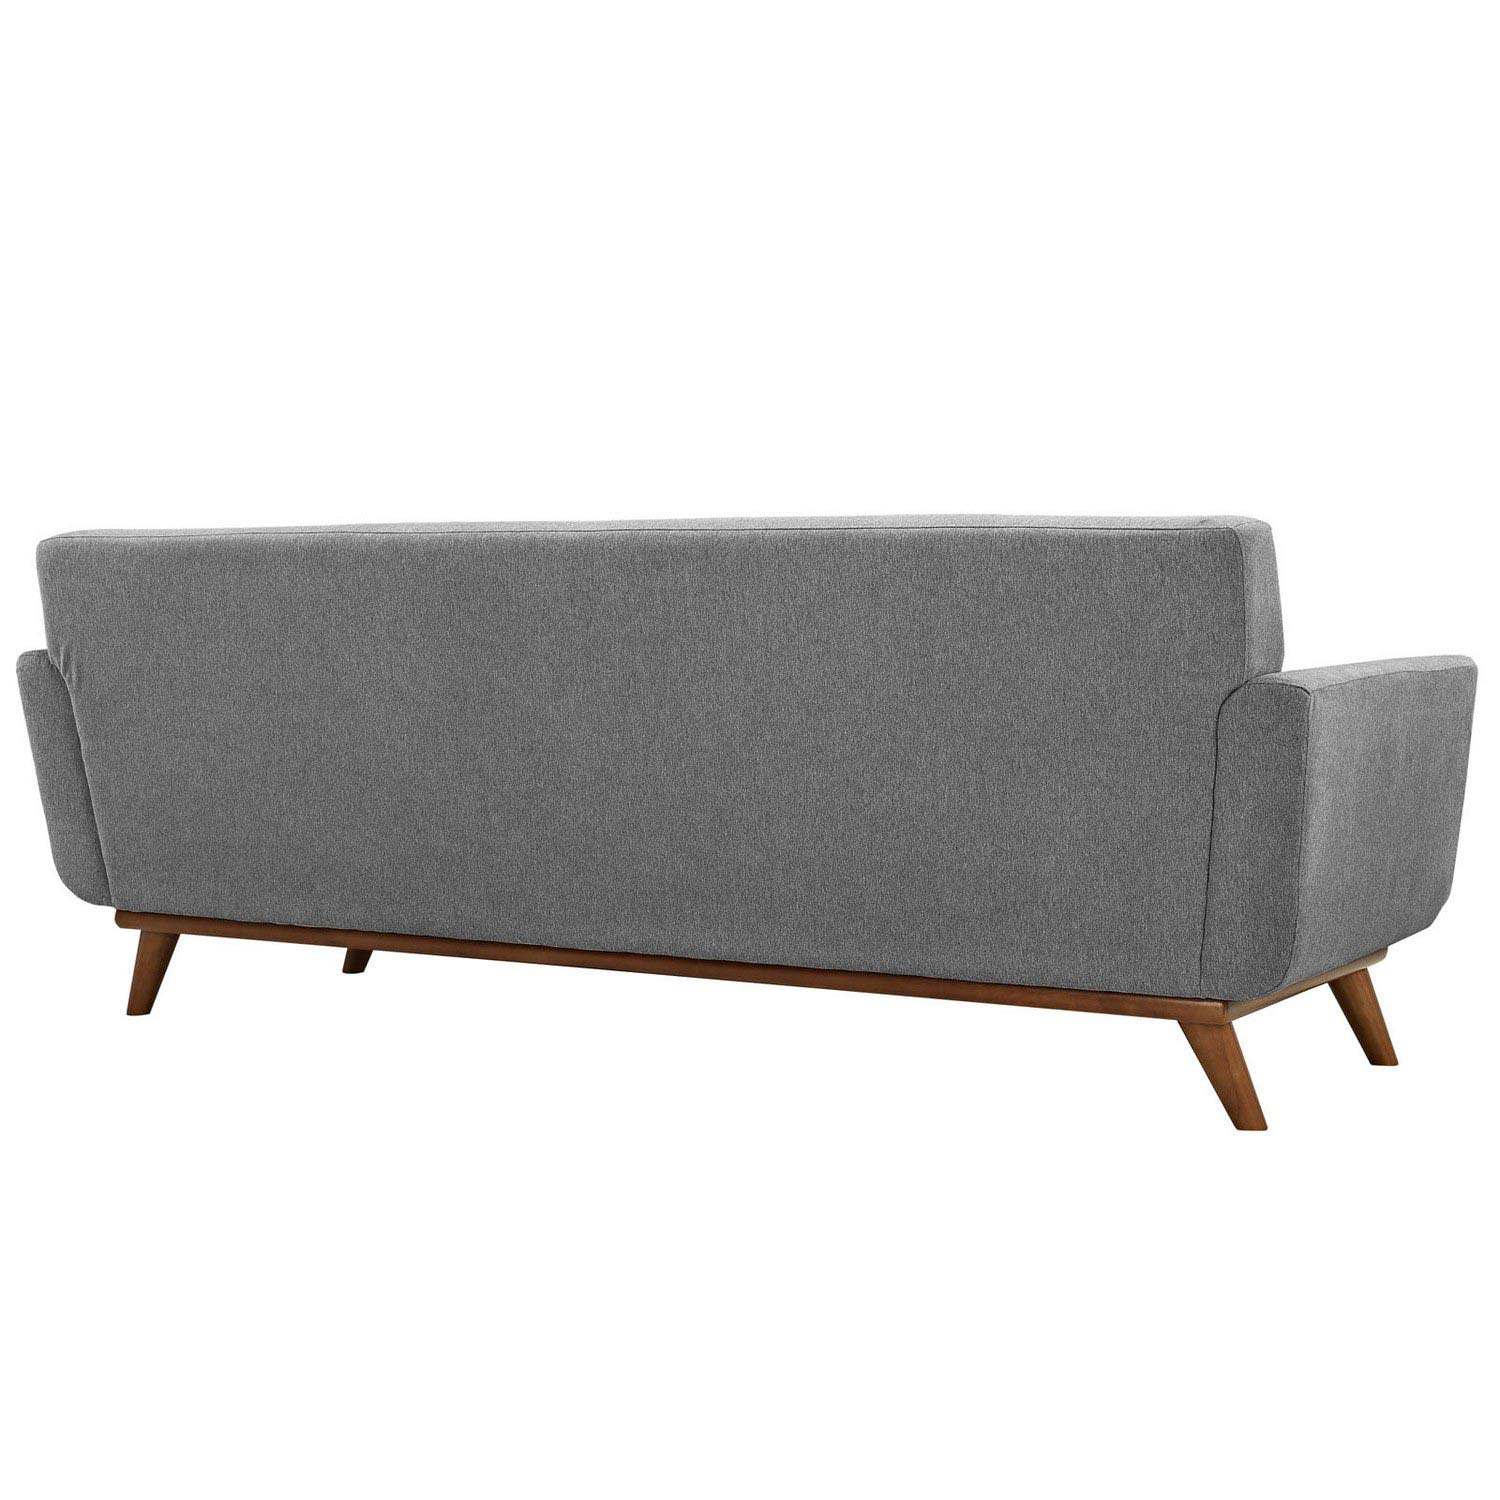 Modway Engage Upholstered Sofa - Expectation Gray